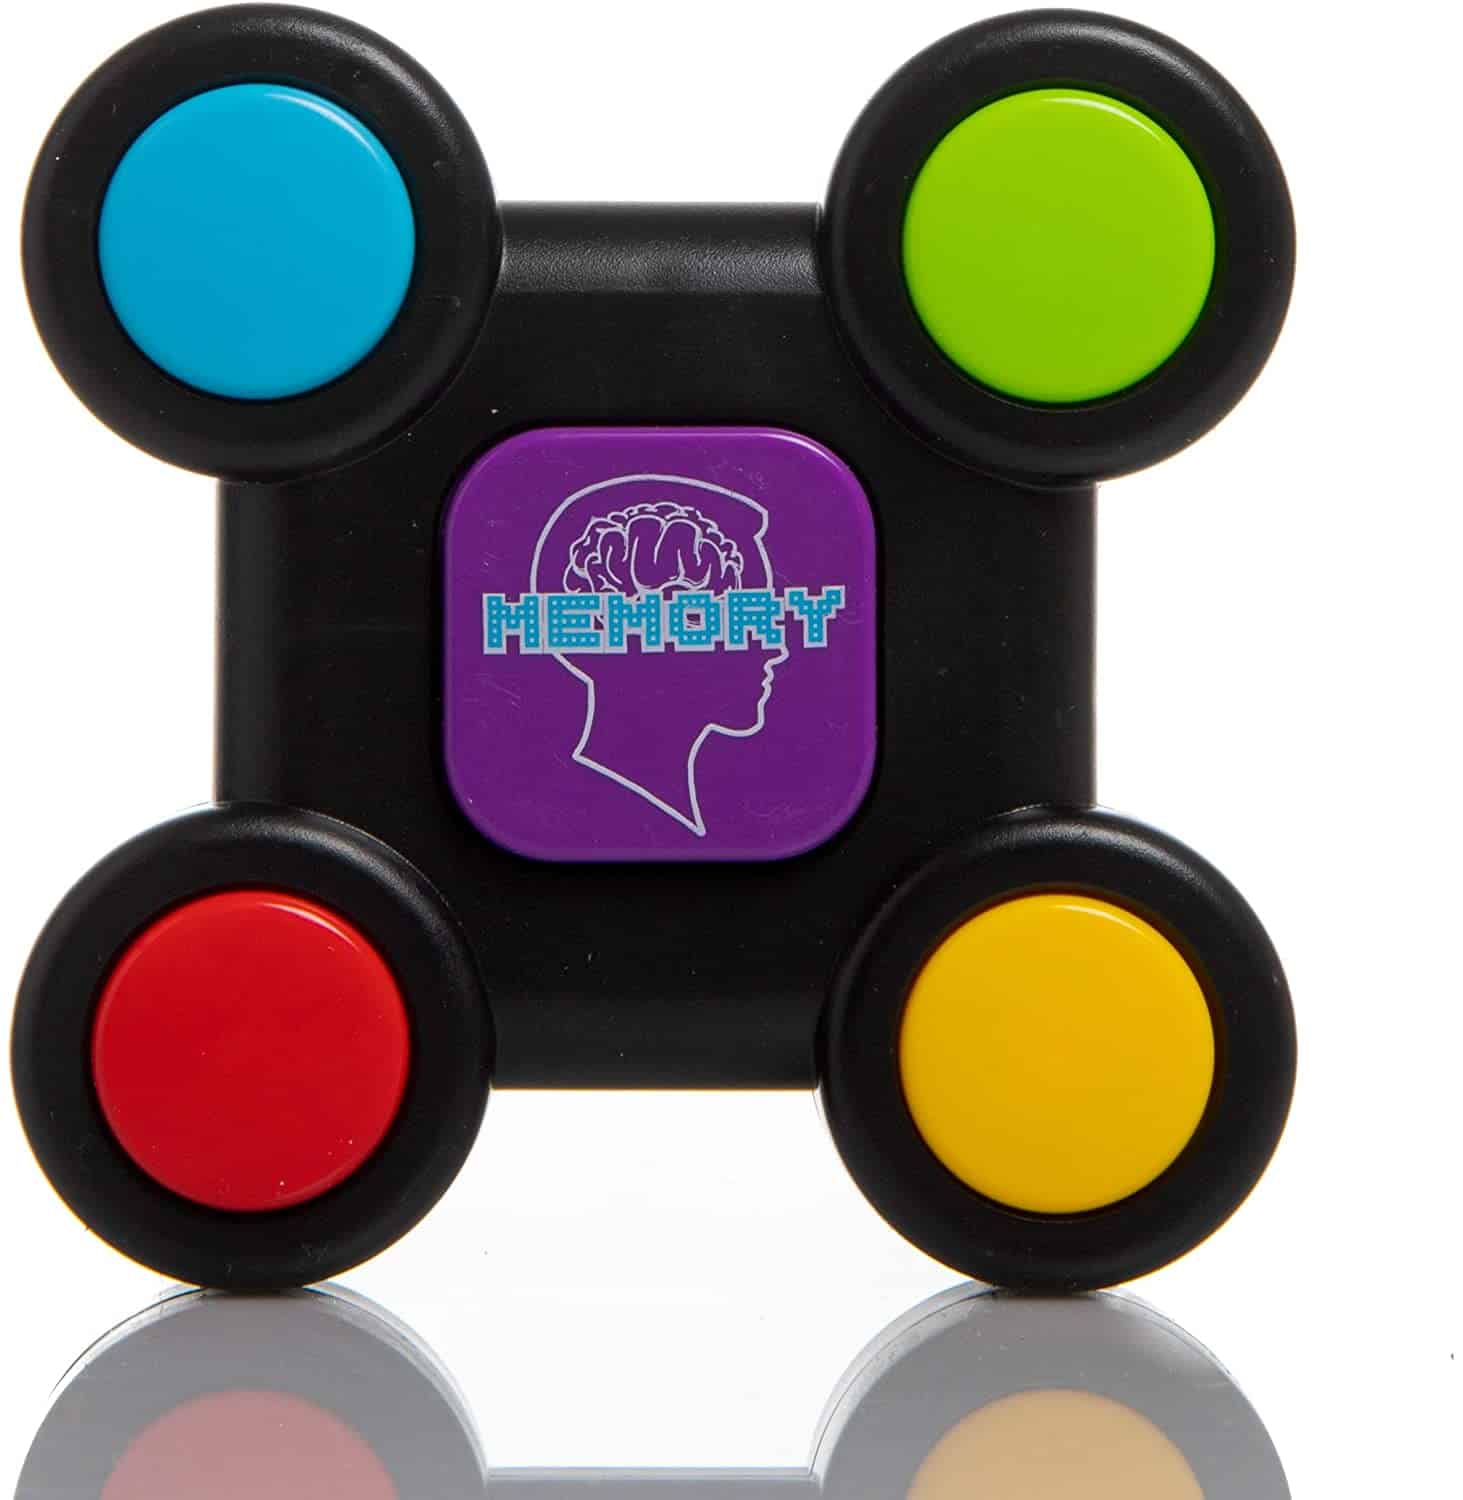 Mejor juego en solitario para niños de 6 años: Swide Rugged Electronic Memory Game